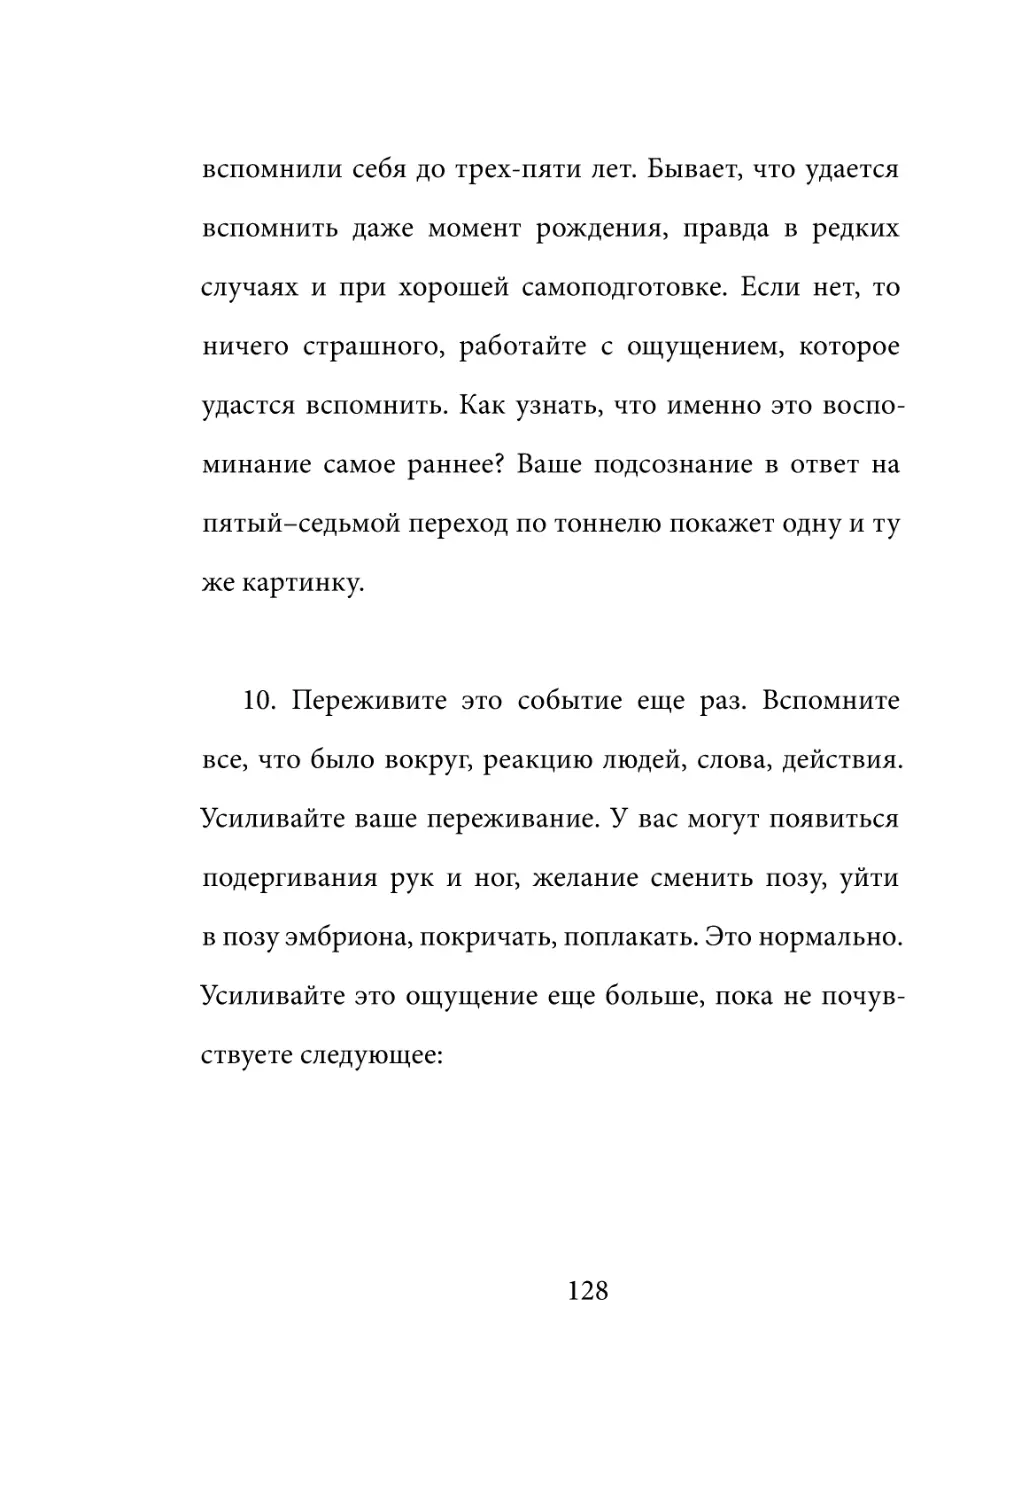 Sergey_Filippov_Dnevnik_samorazvitia_Evolyutsia_Vnutrennego_Sostoyania_128.pdf (p.128)